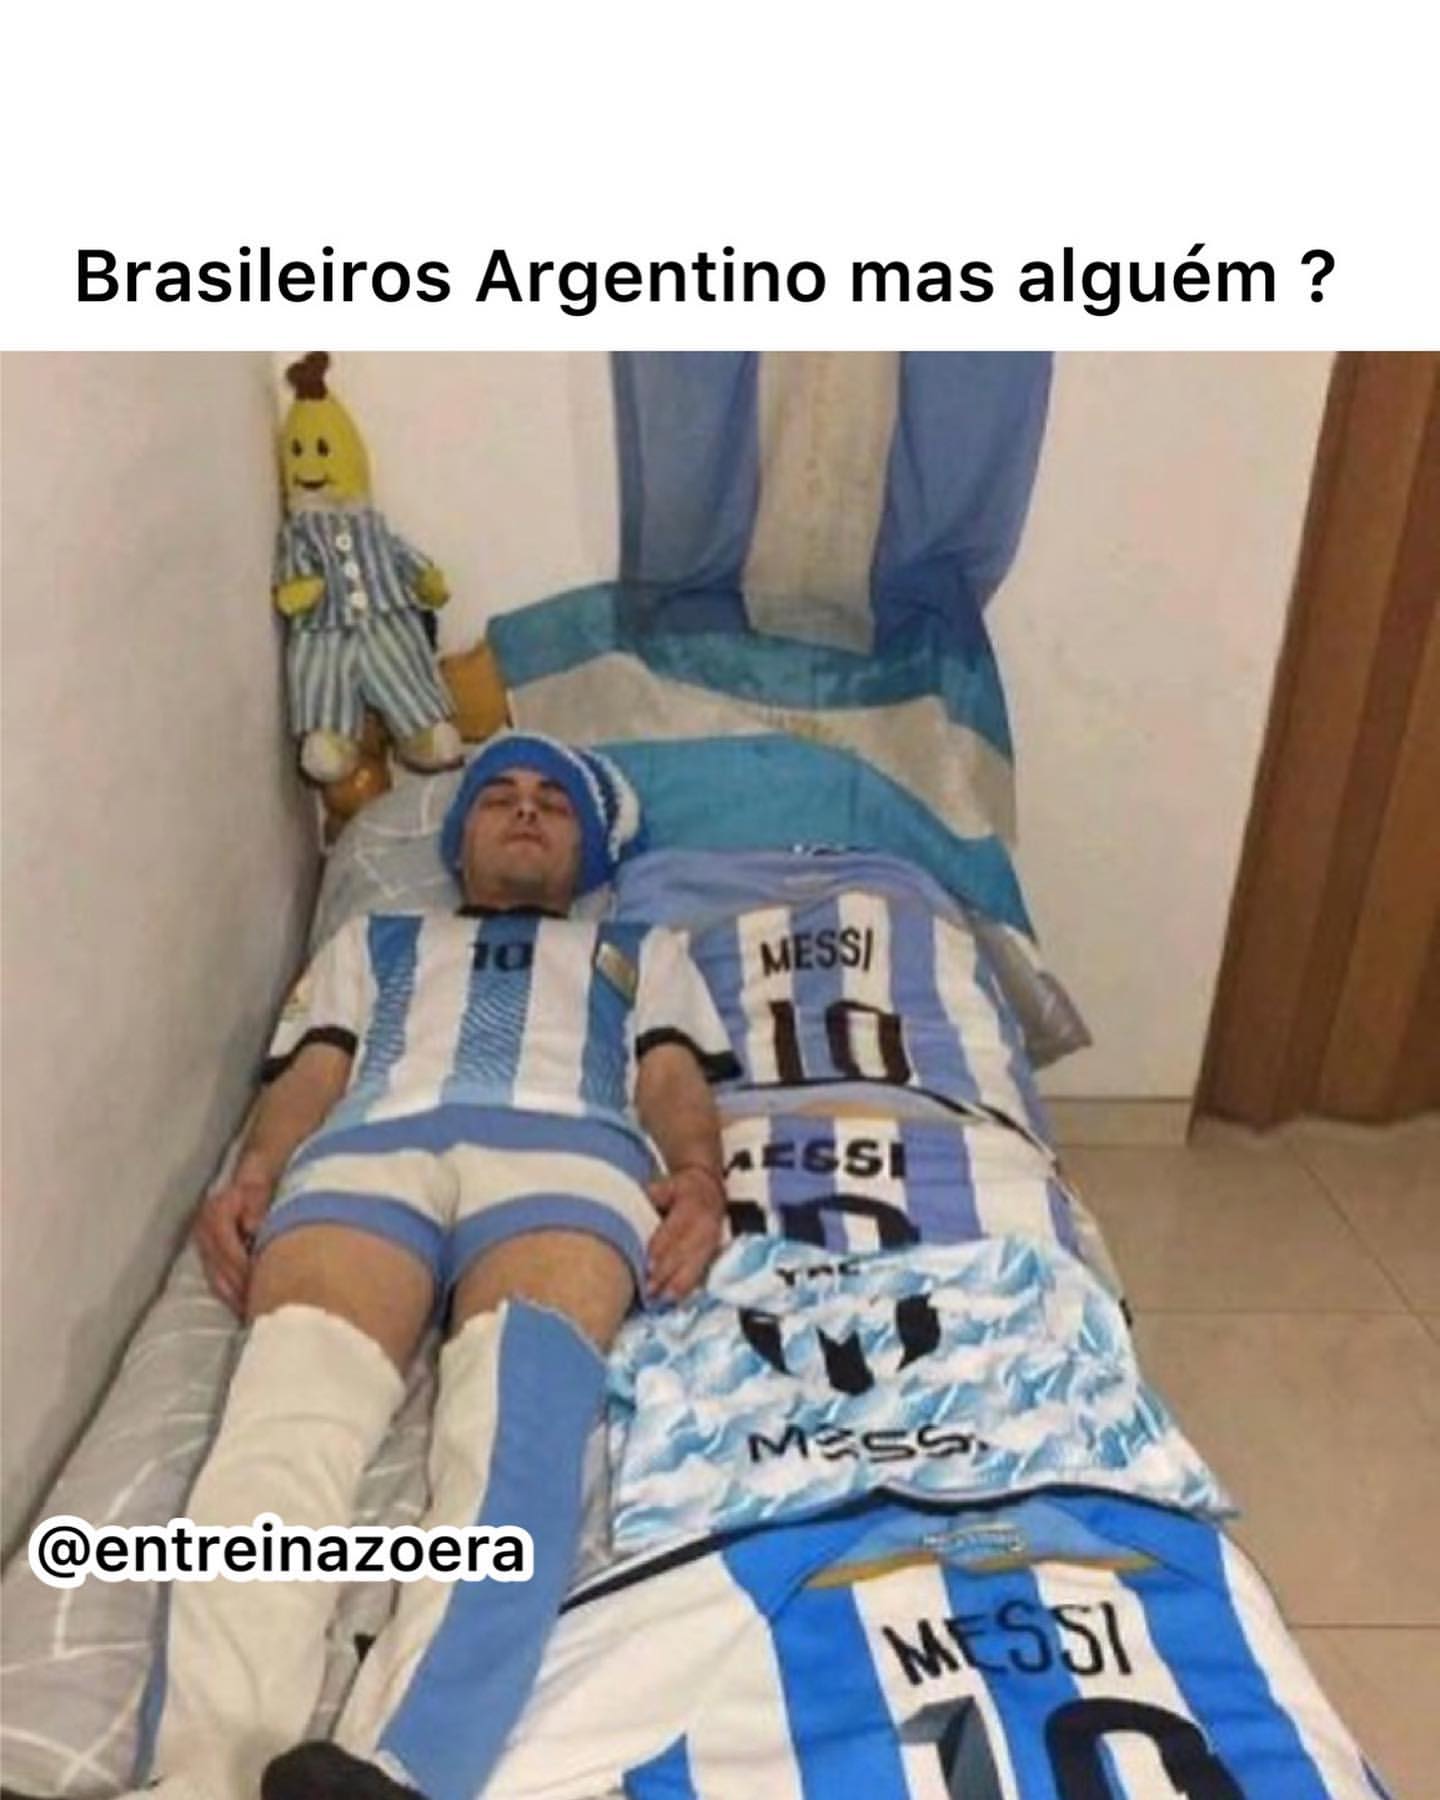 Brasileiros Argentino mas alguém?